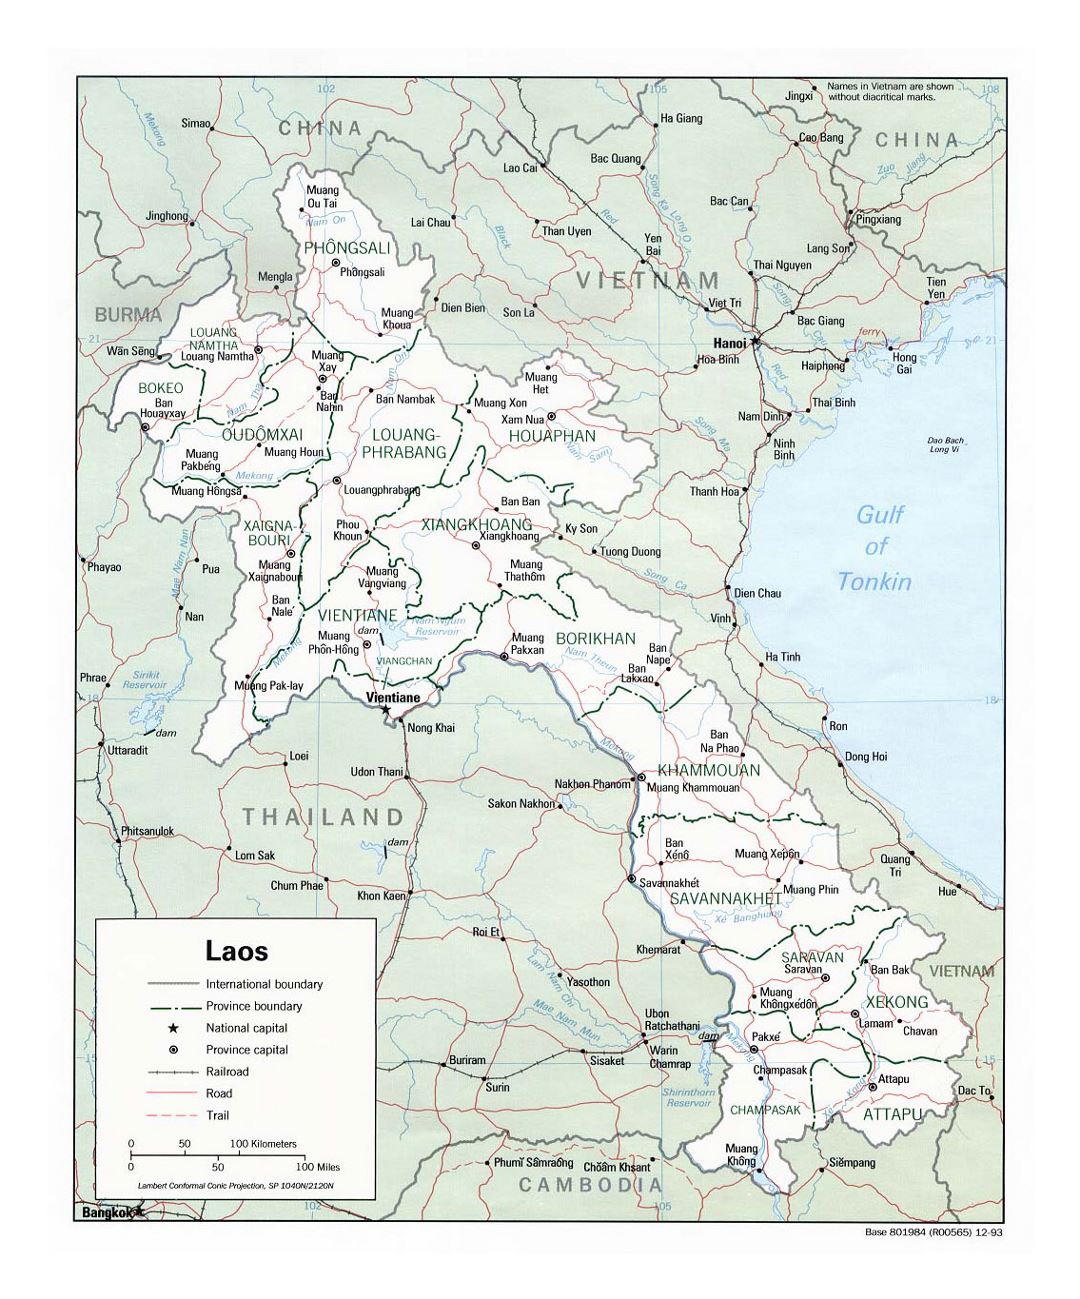 Detallado mapa político y administrativo de Laos con carreteras, ferrocarriles y principales ciudades - 1993